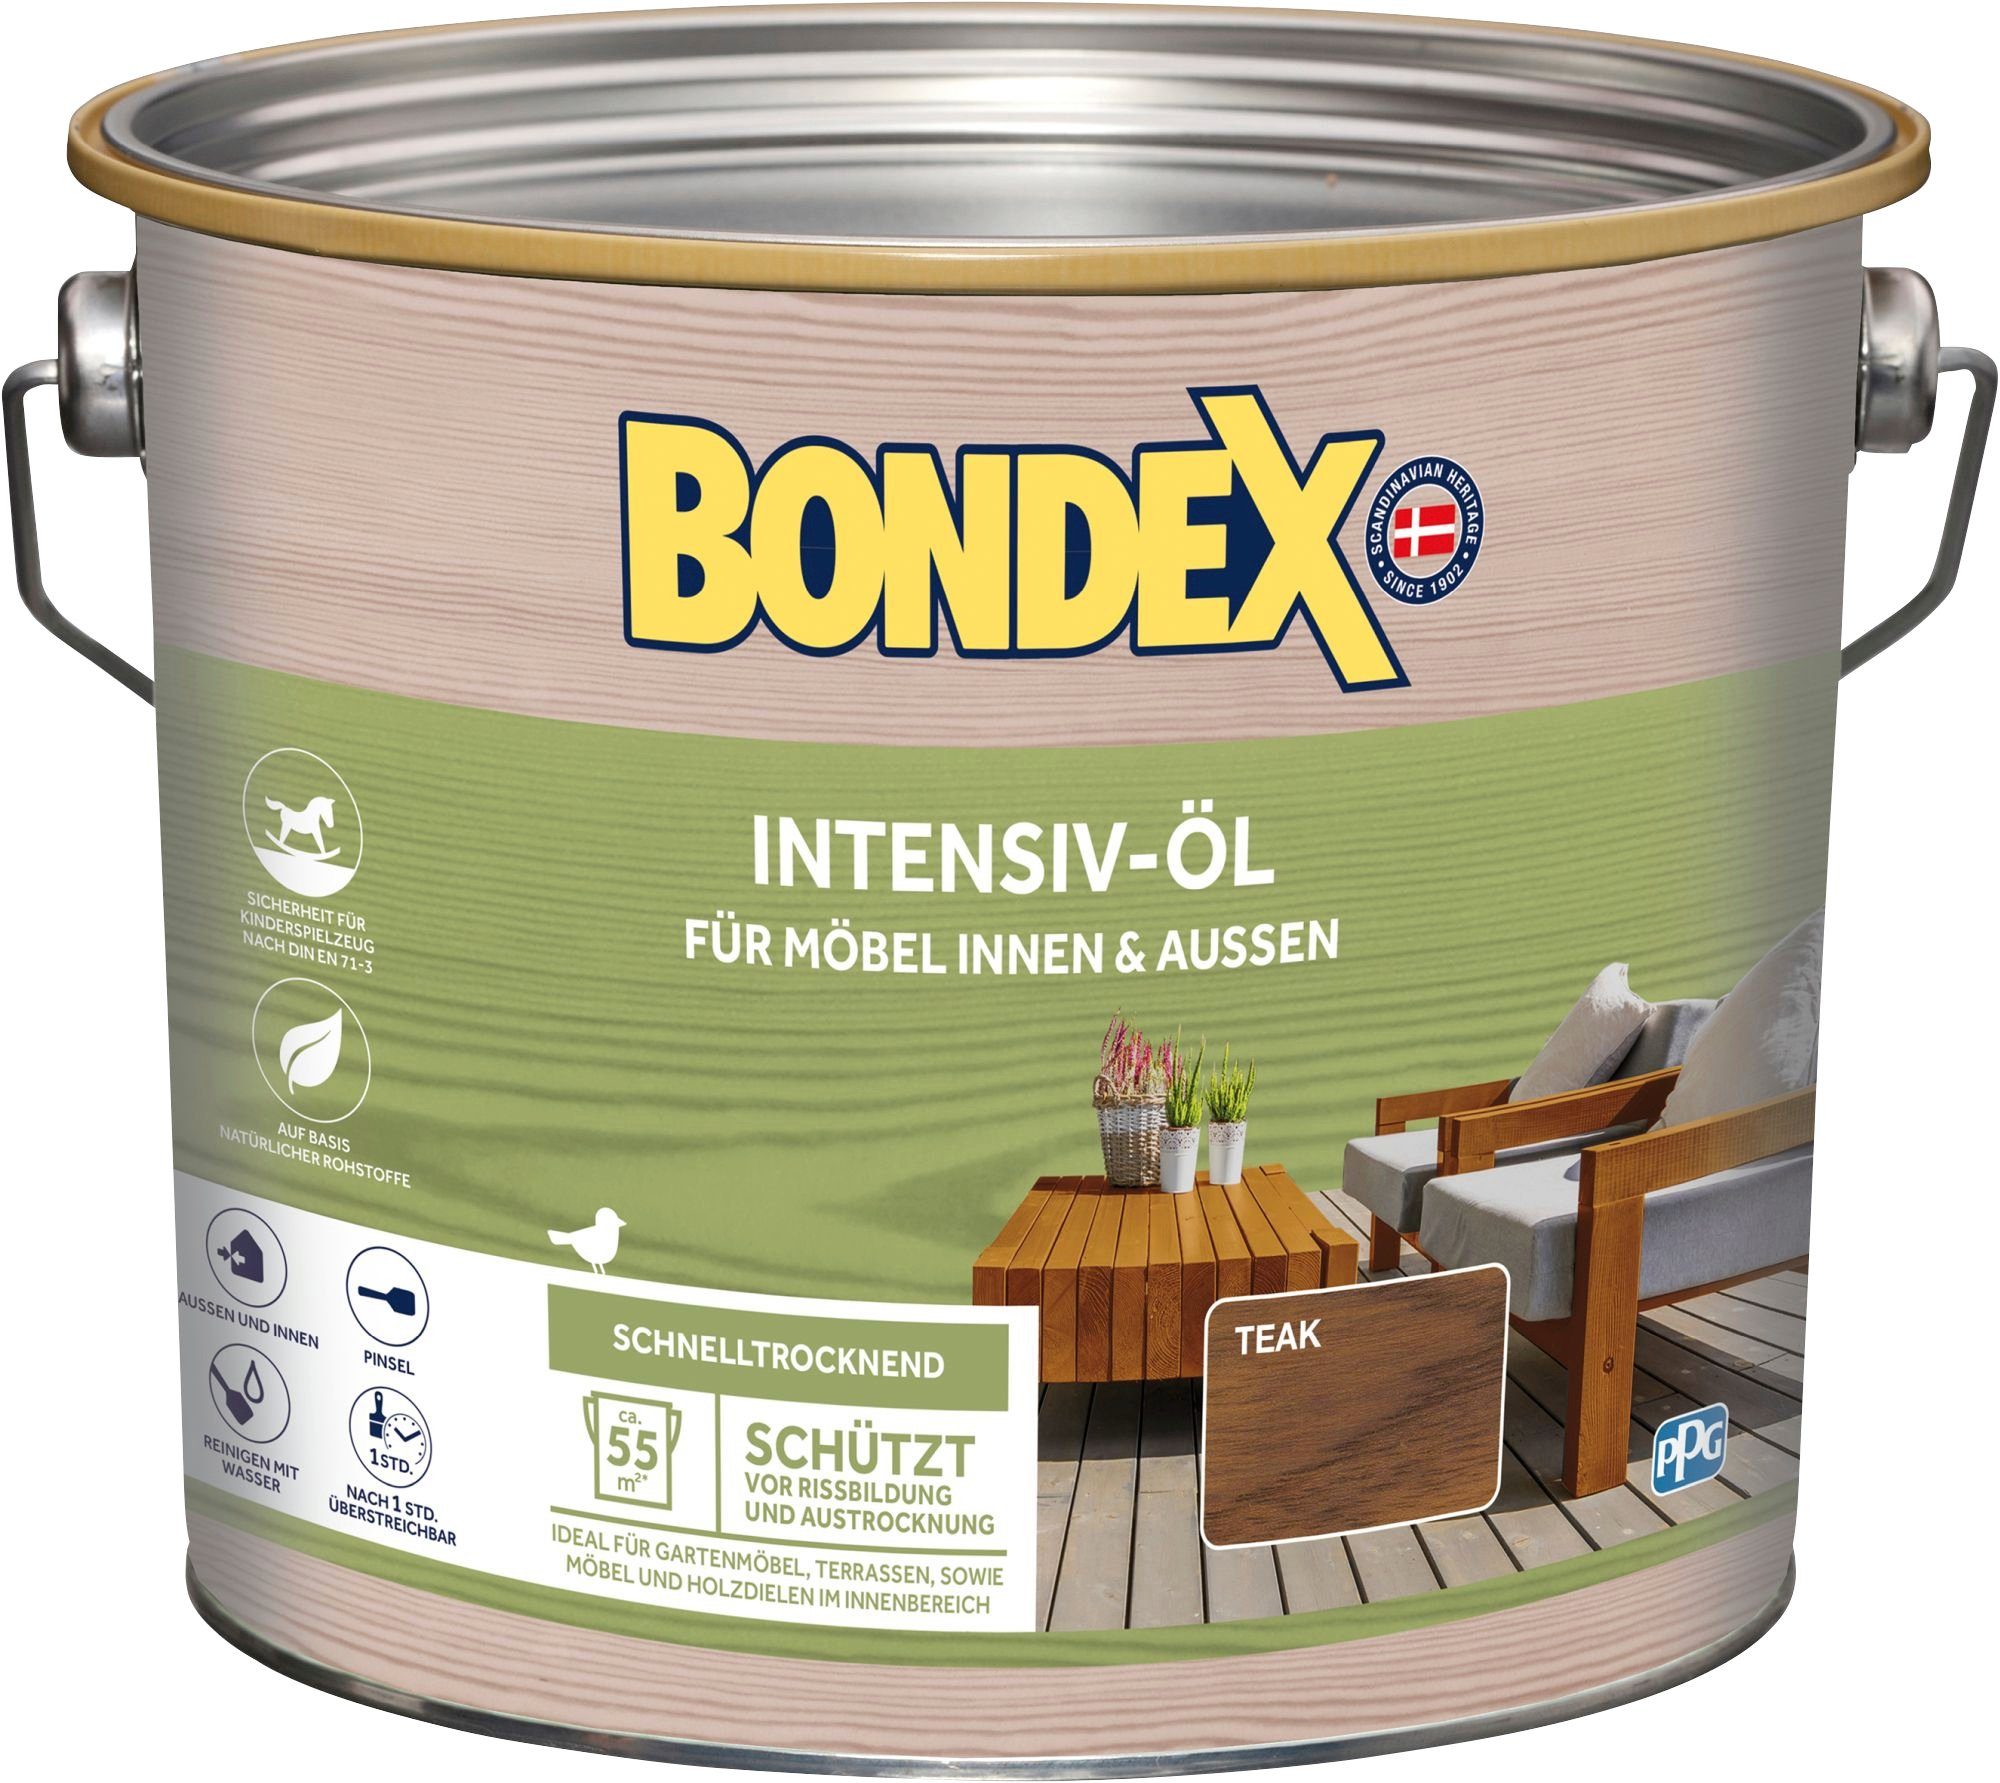 INTENSIV-ÖL, Bondex Teak, Inhalt 0,75 Holzöl Liter